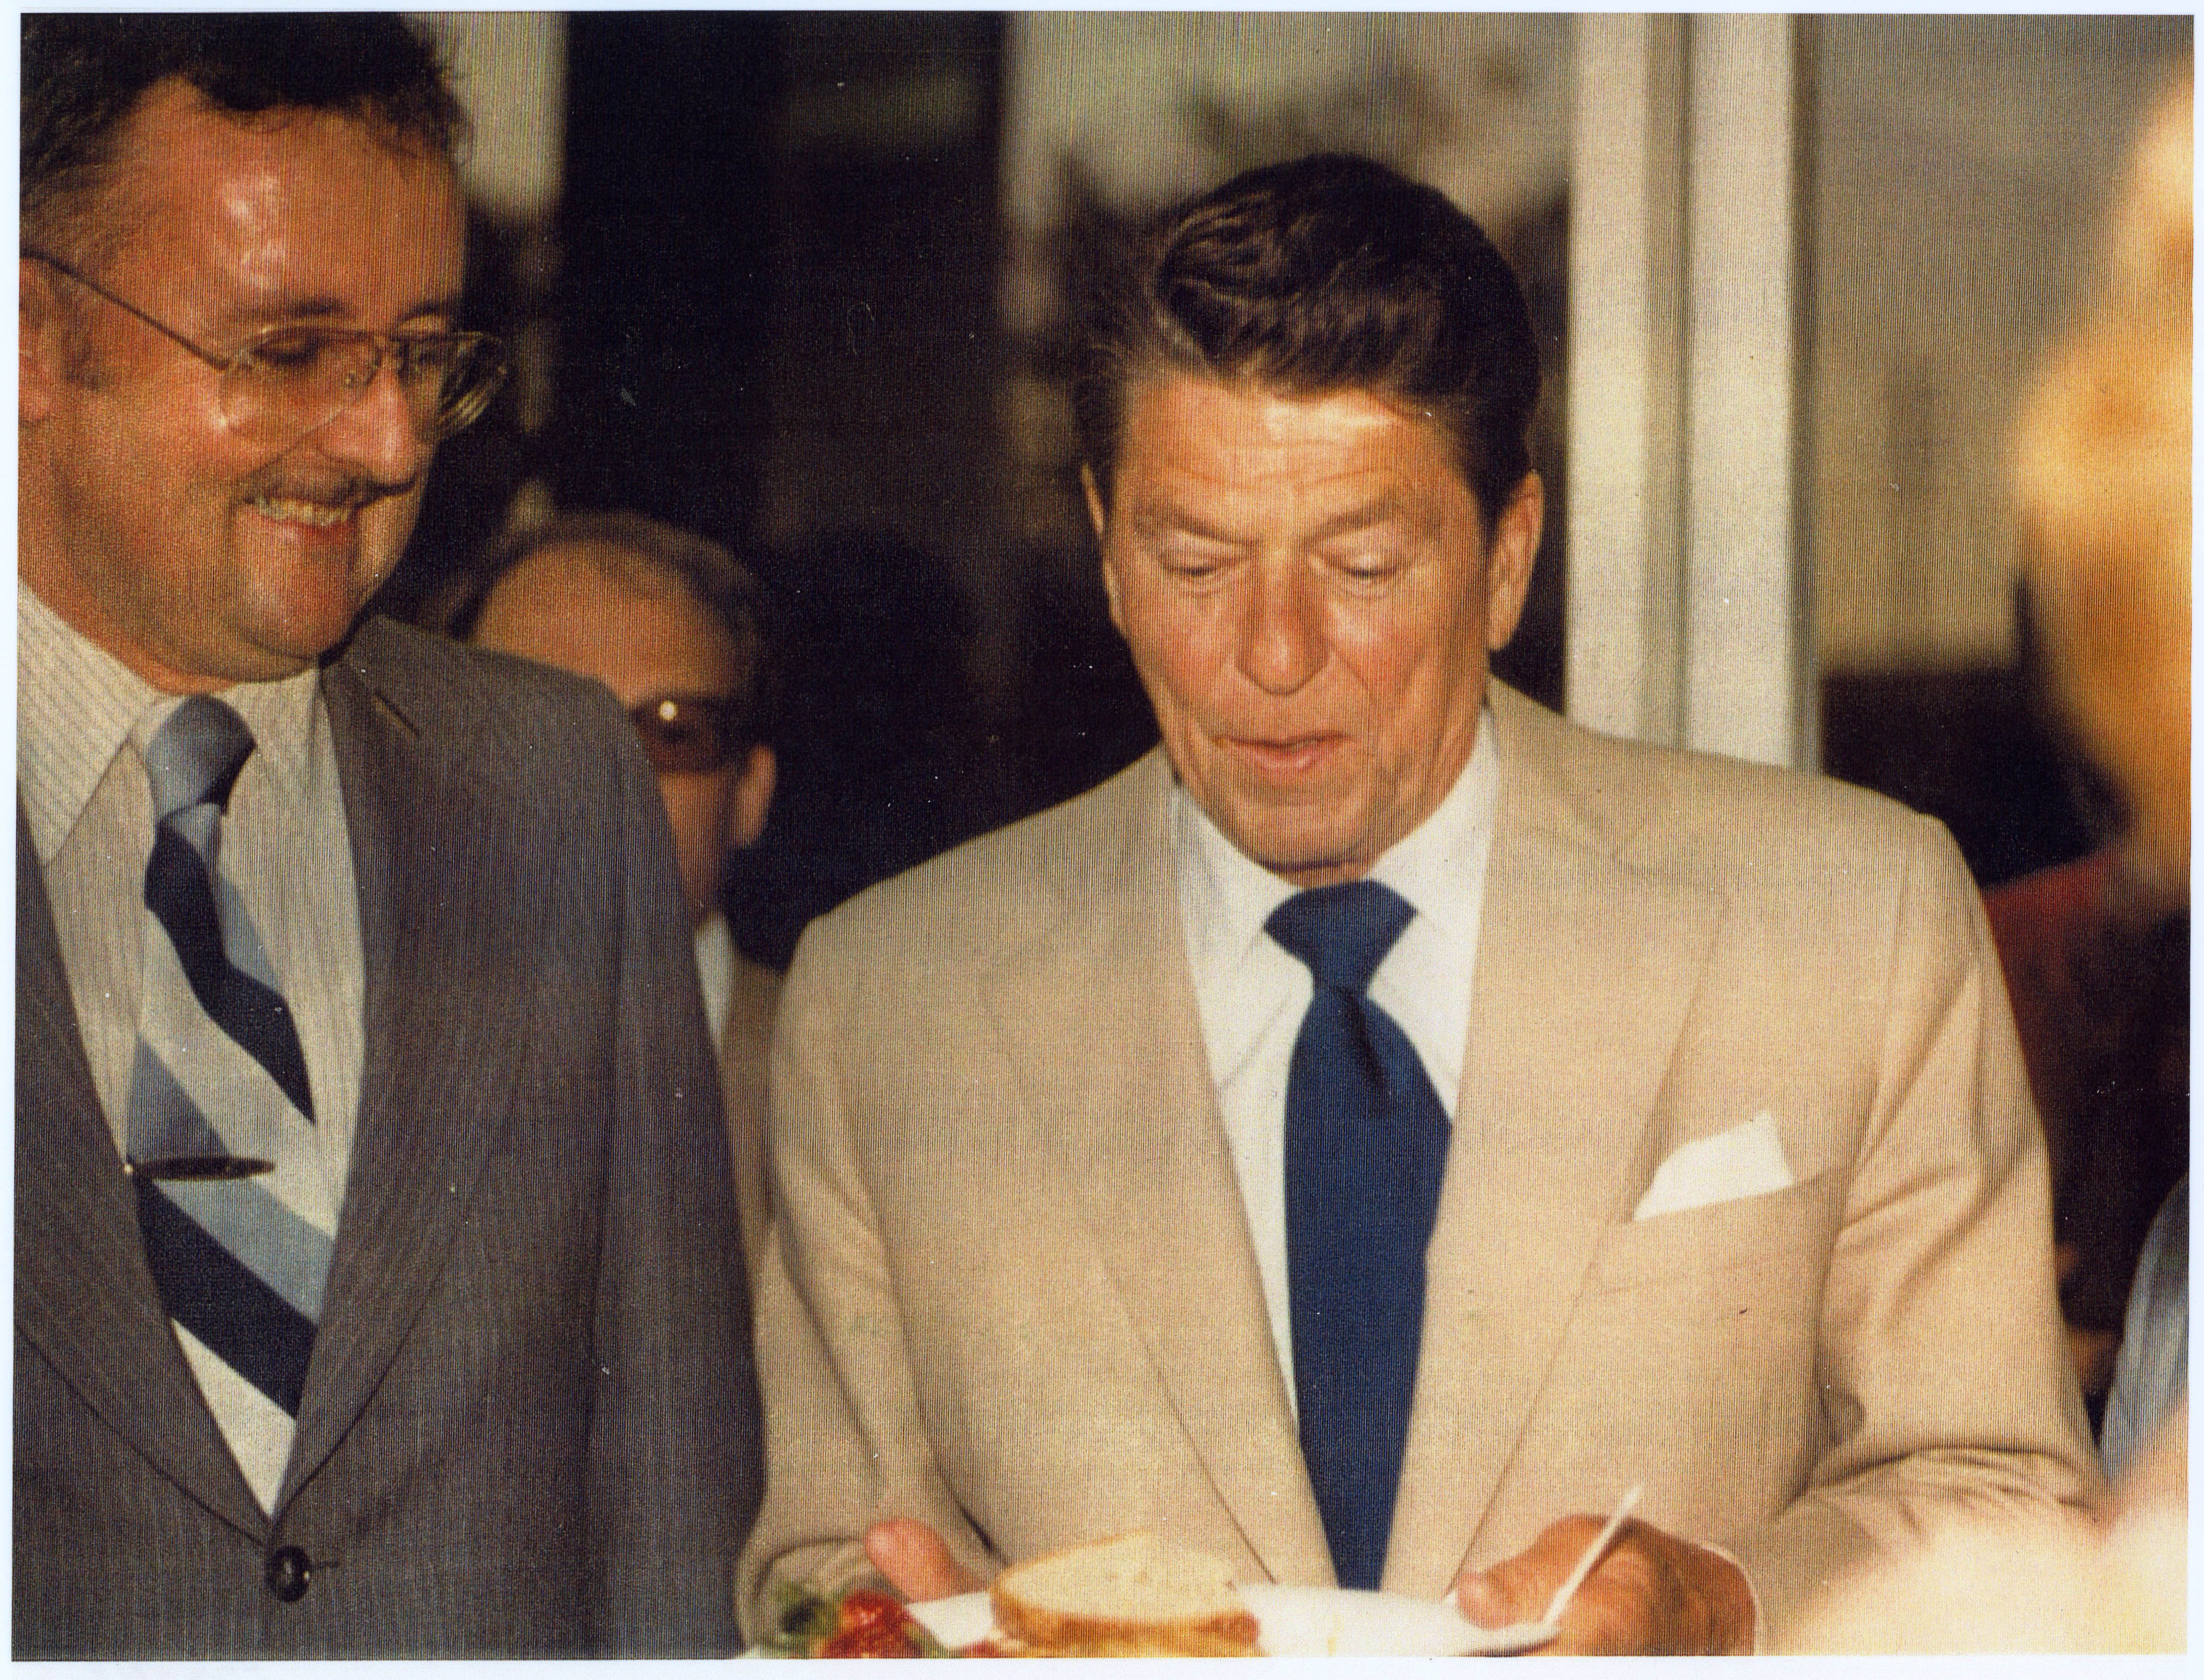 Ronald Reagan and Frank de Balogh at Los Angeles airport (LAX) 